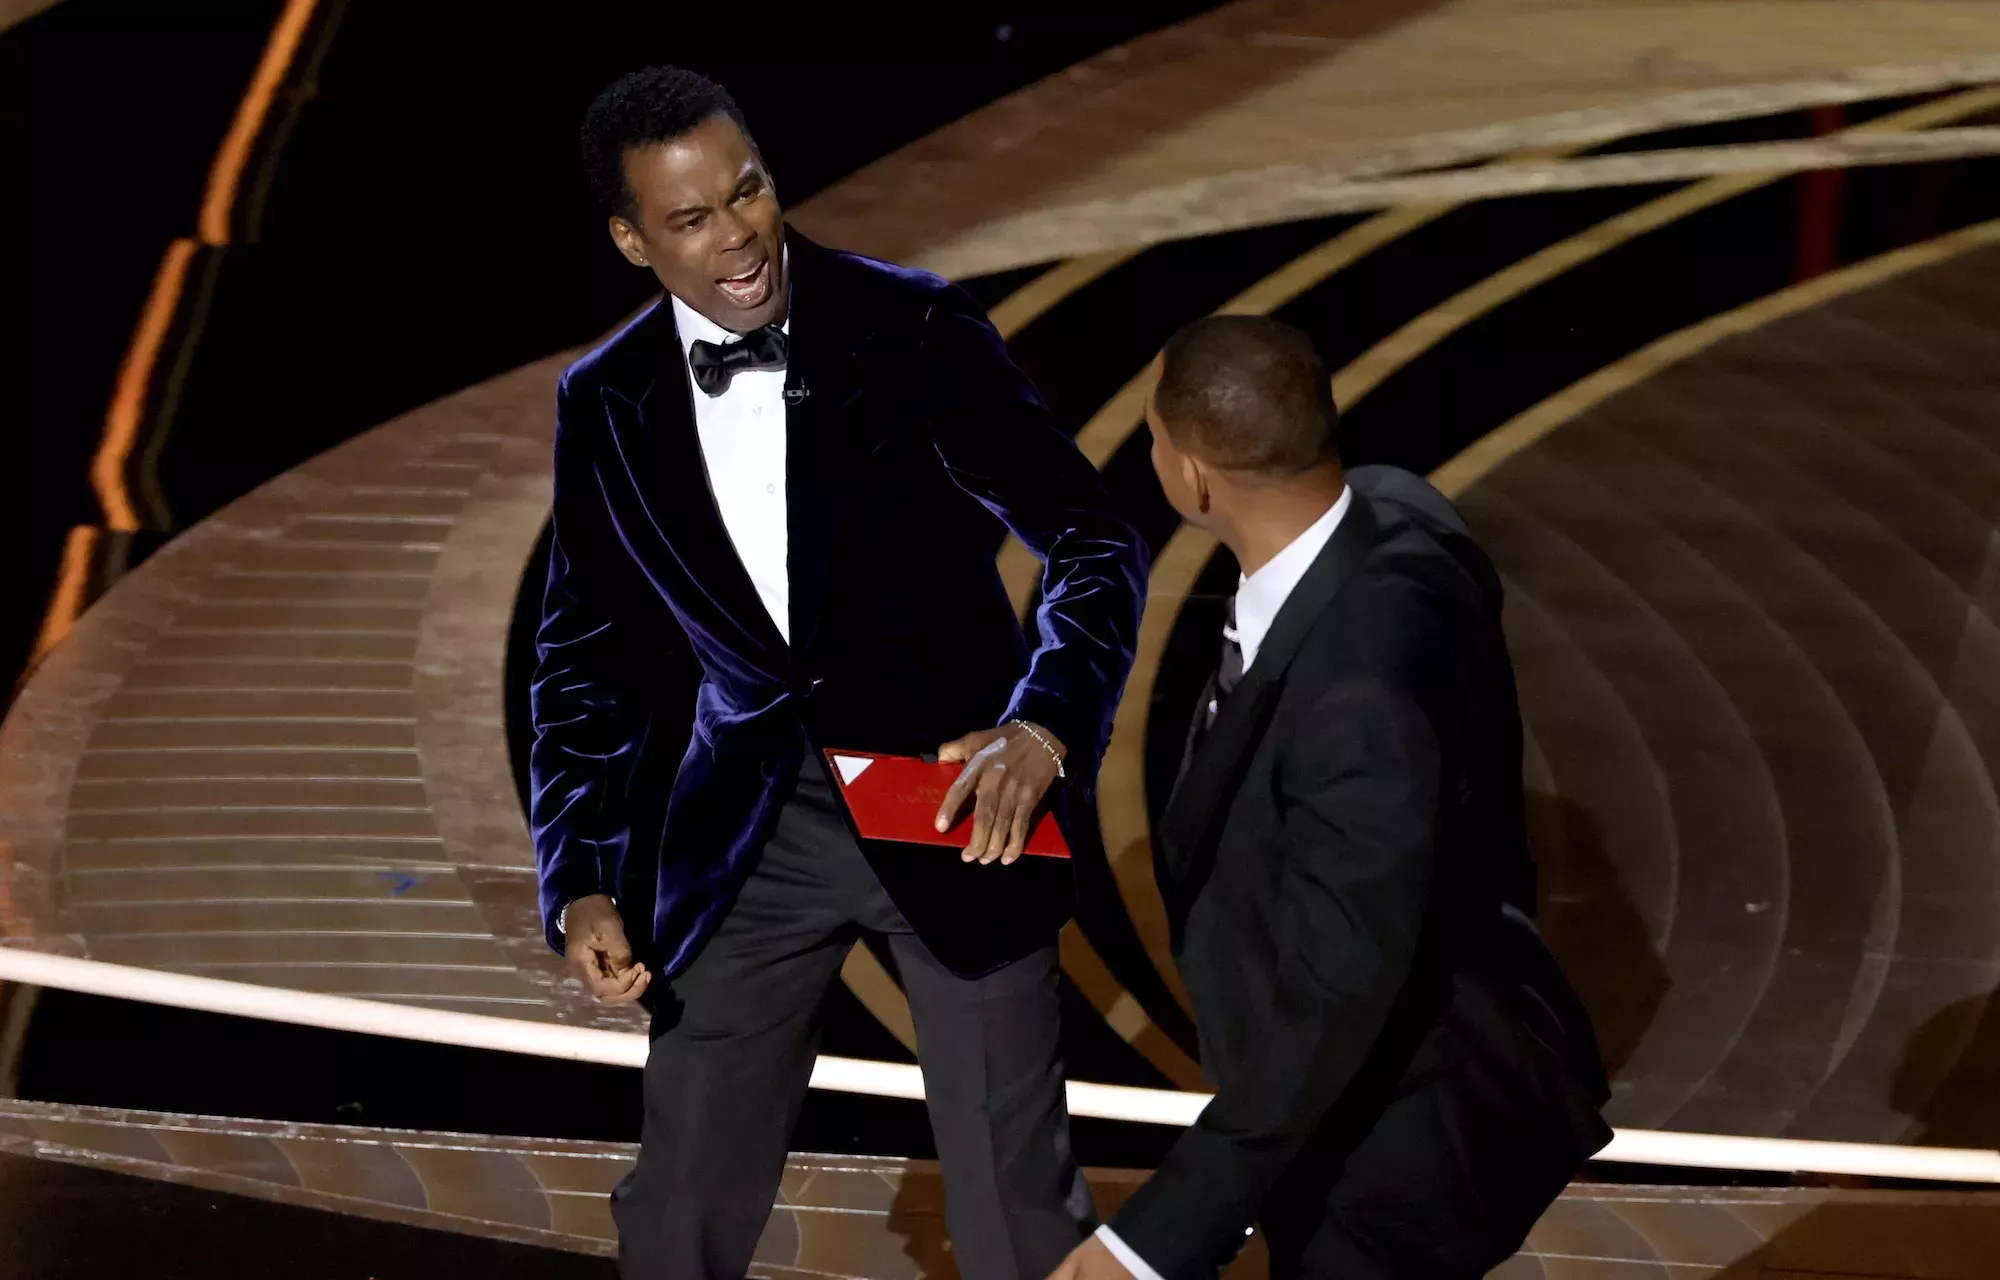 Chris Rock bromeó sobre Muhammad Ali entre bastidores tras la bofetada de Will Smith